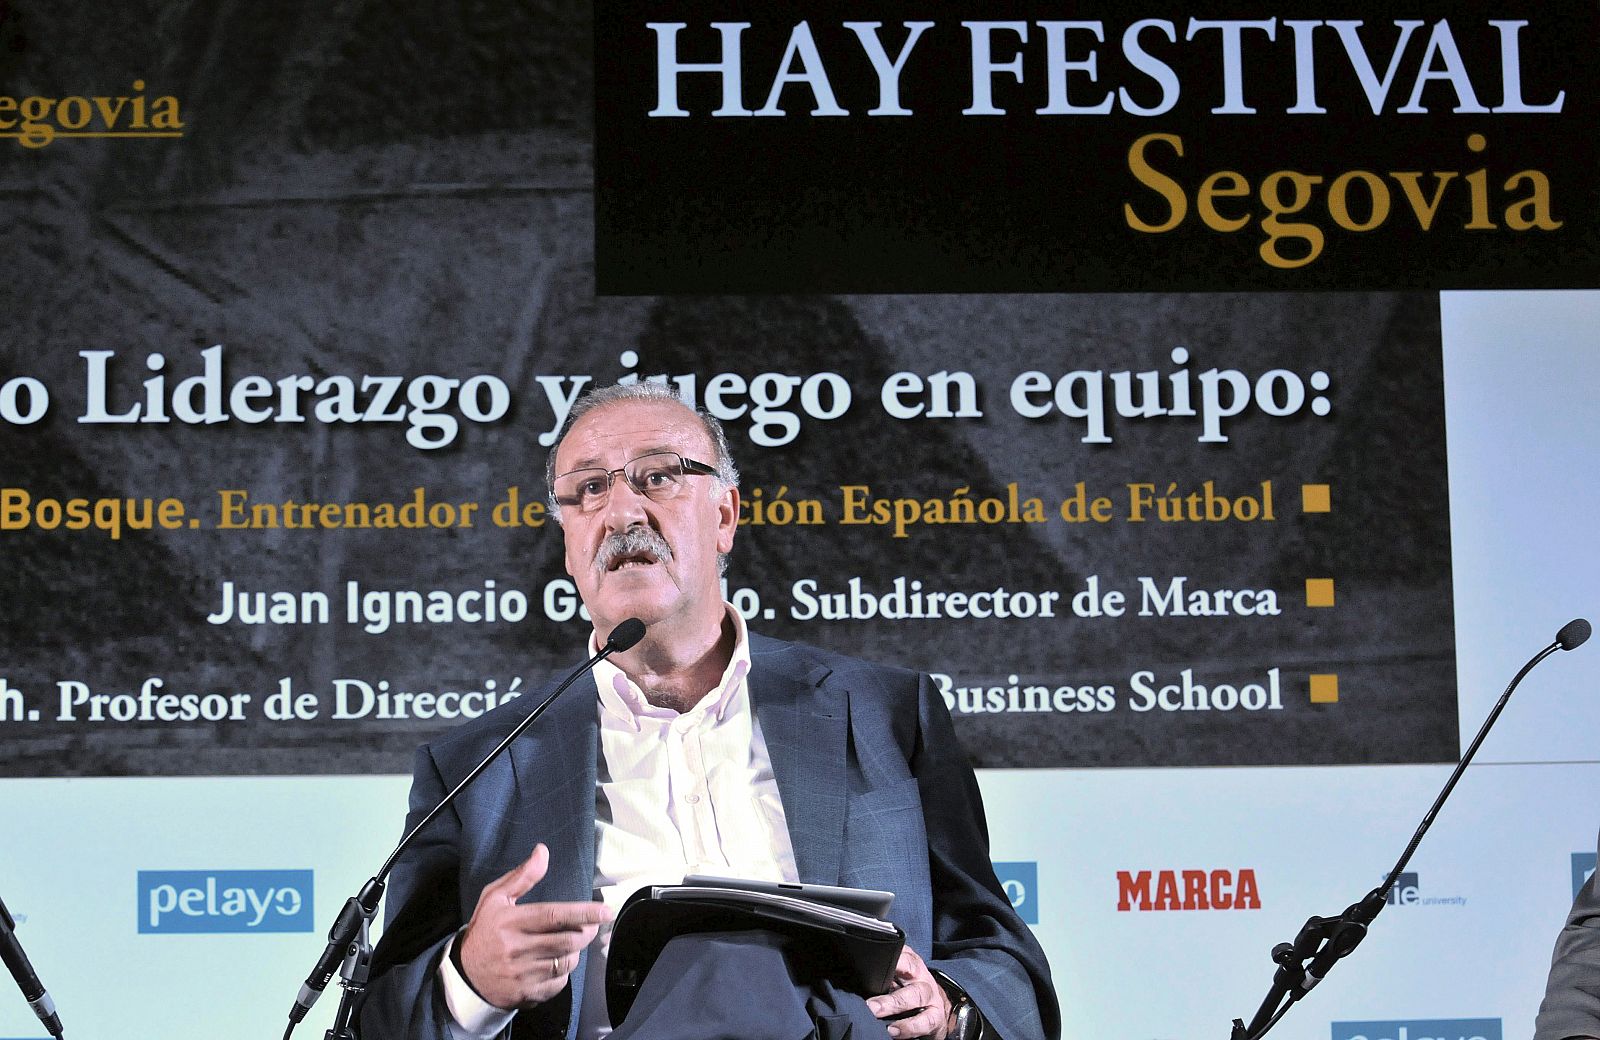 El seleccionador español de fútbol, Vicente del Bosque, interviene durante la sesión "Liderazgo y juego en equipo", en el encuentro cultural "Hay Festival" de Segovia.